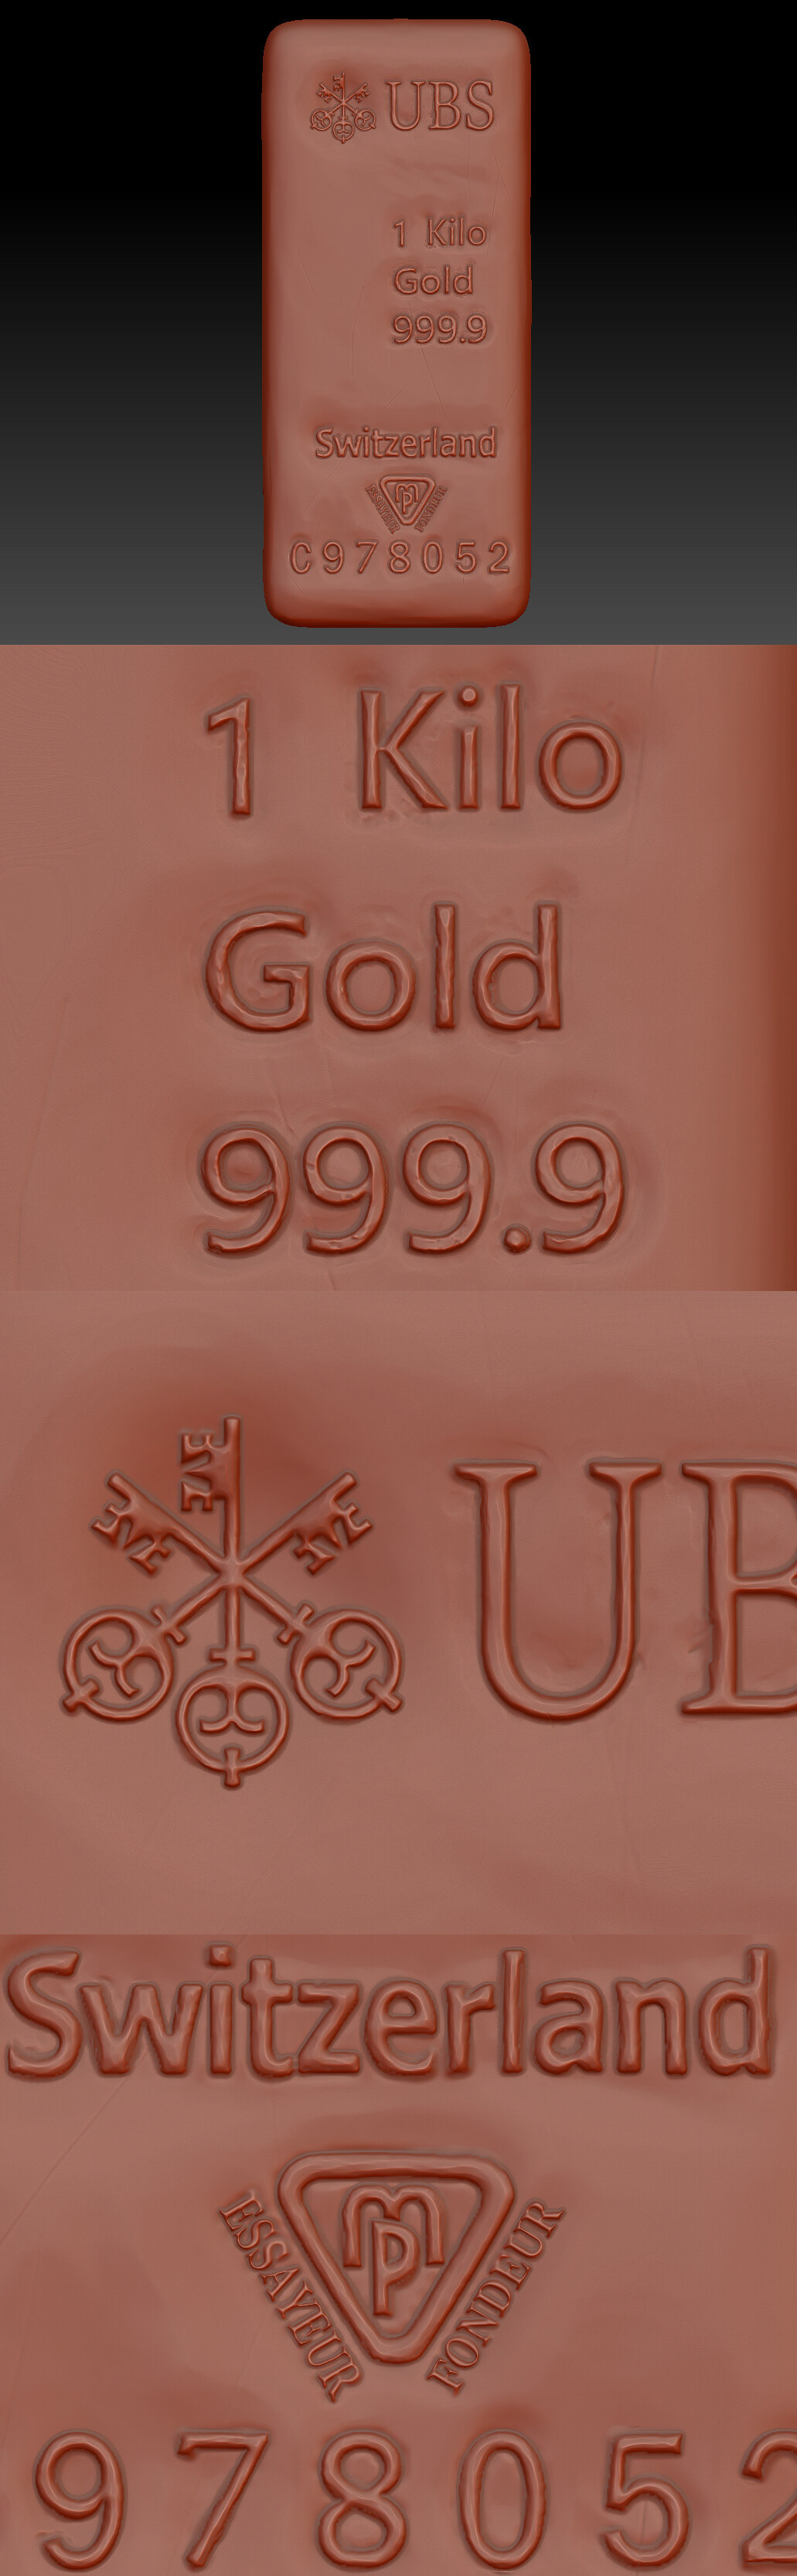 gold bar golden devil banker novel book patakis sculpting  texturing advertisement